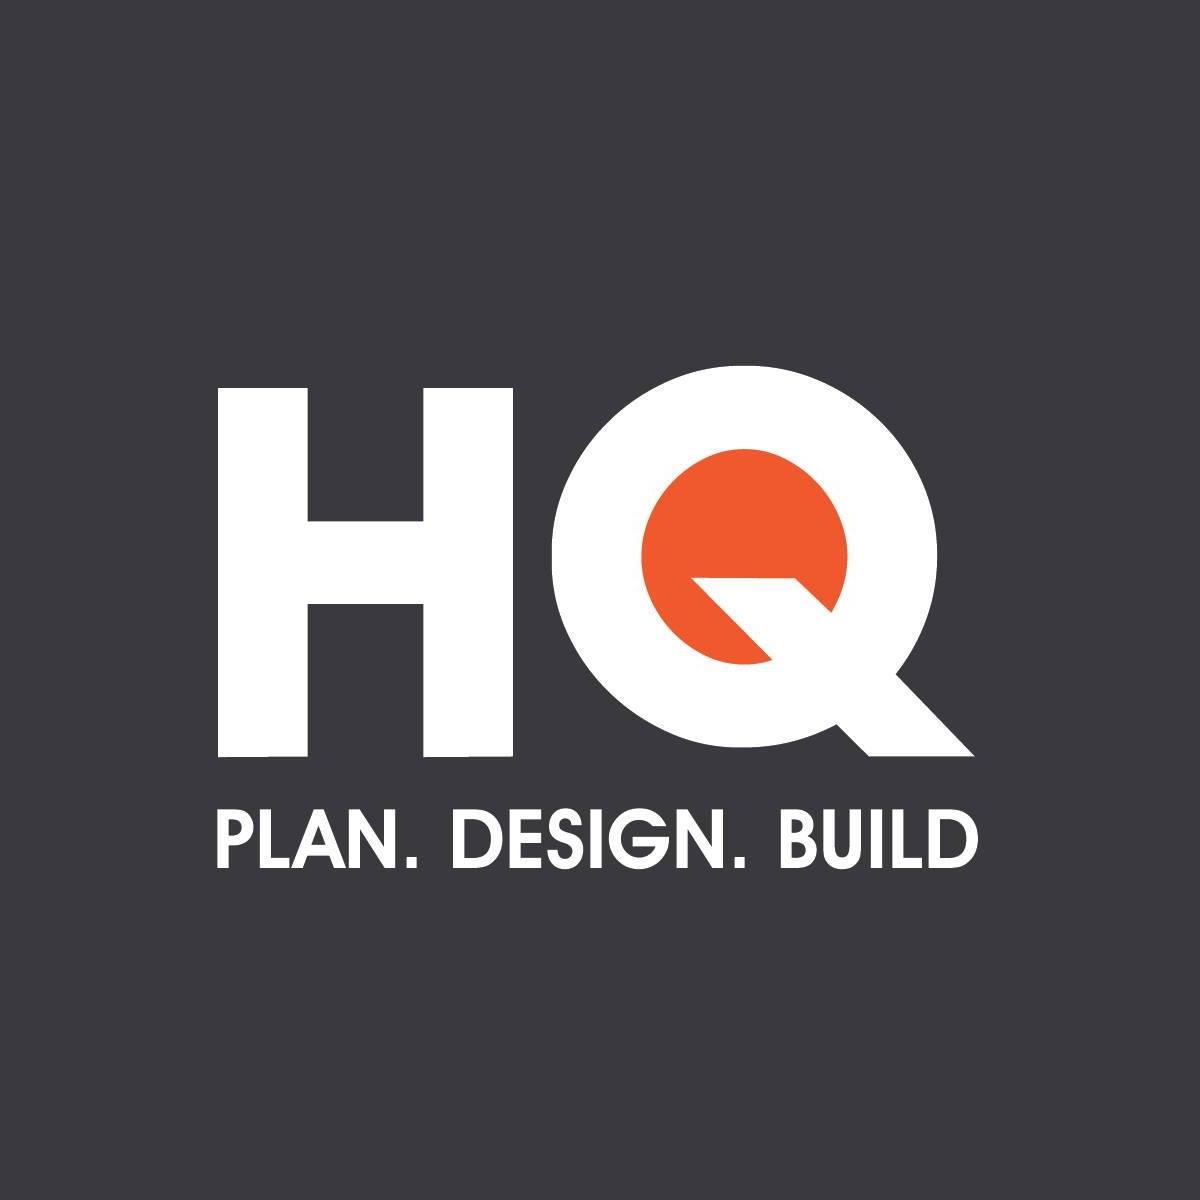 HQ Building Design